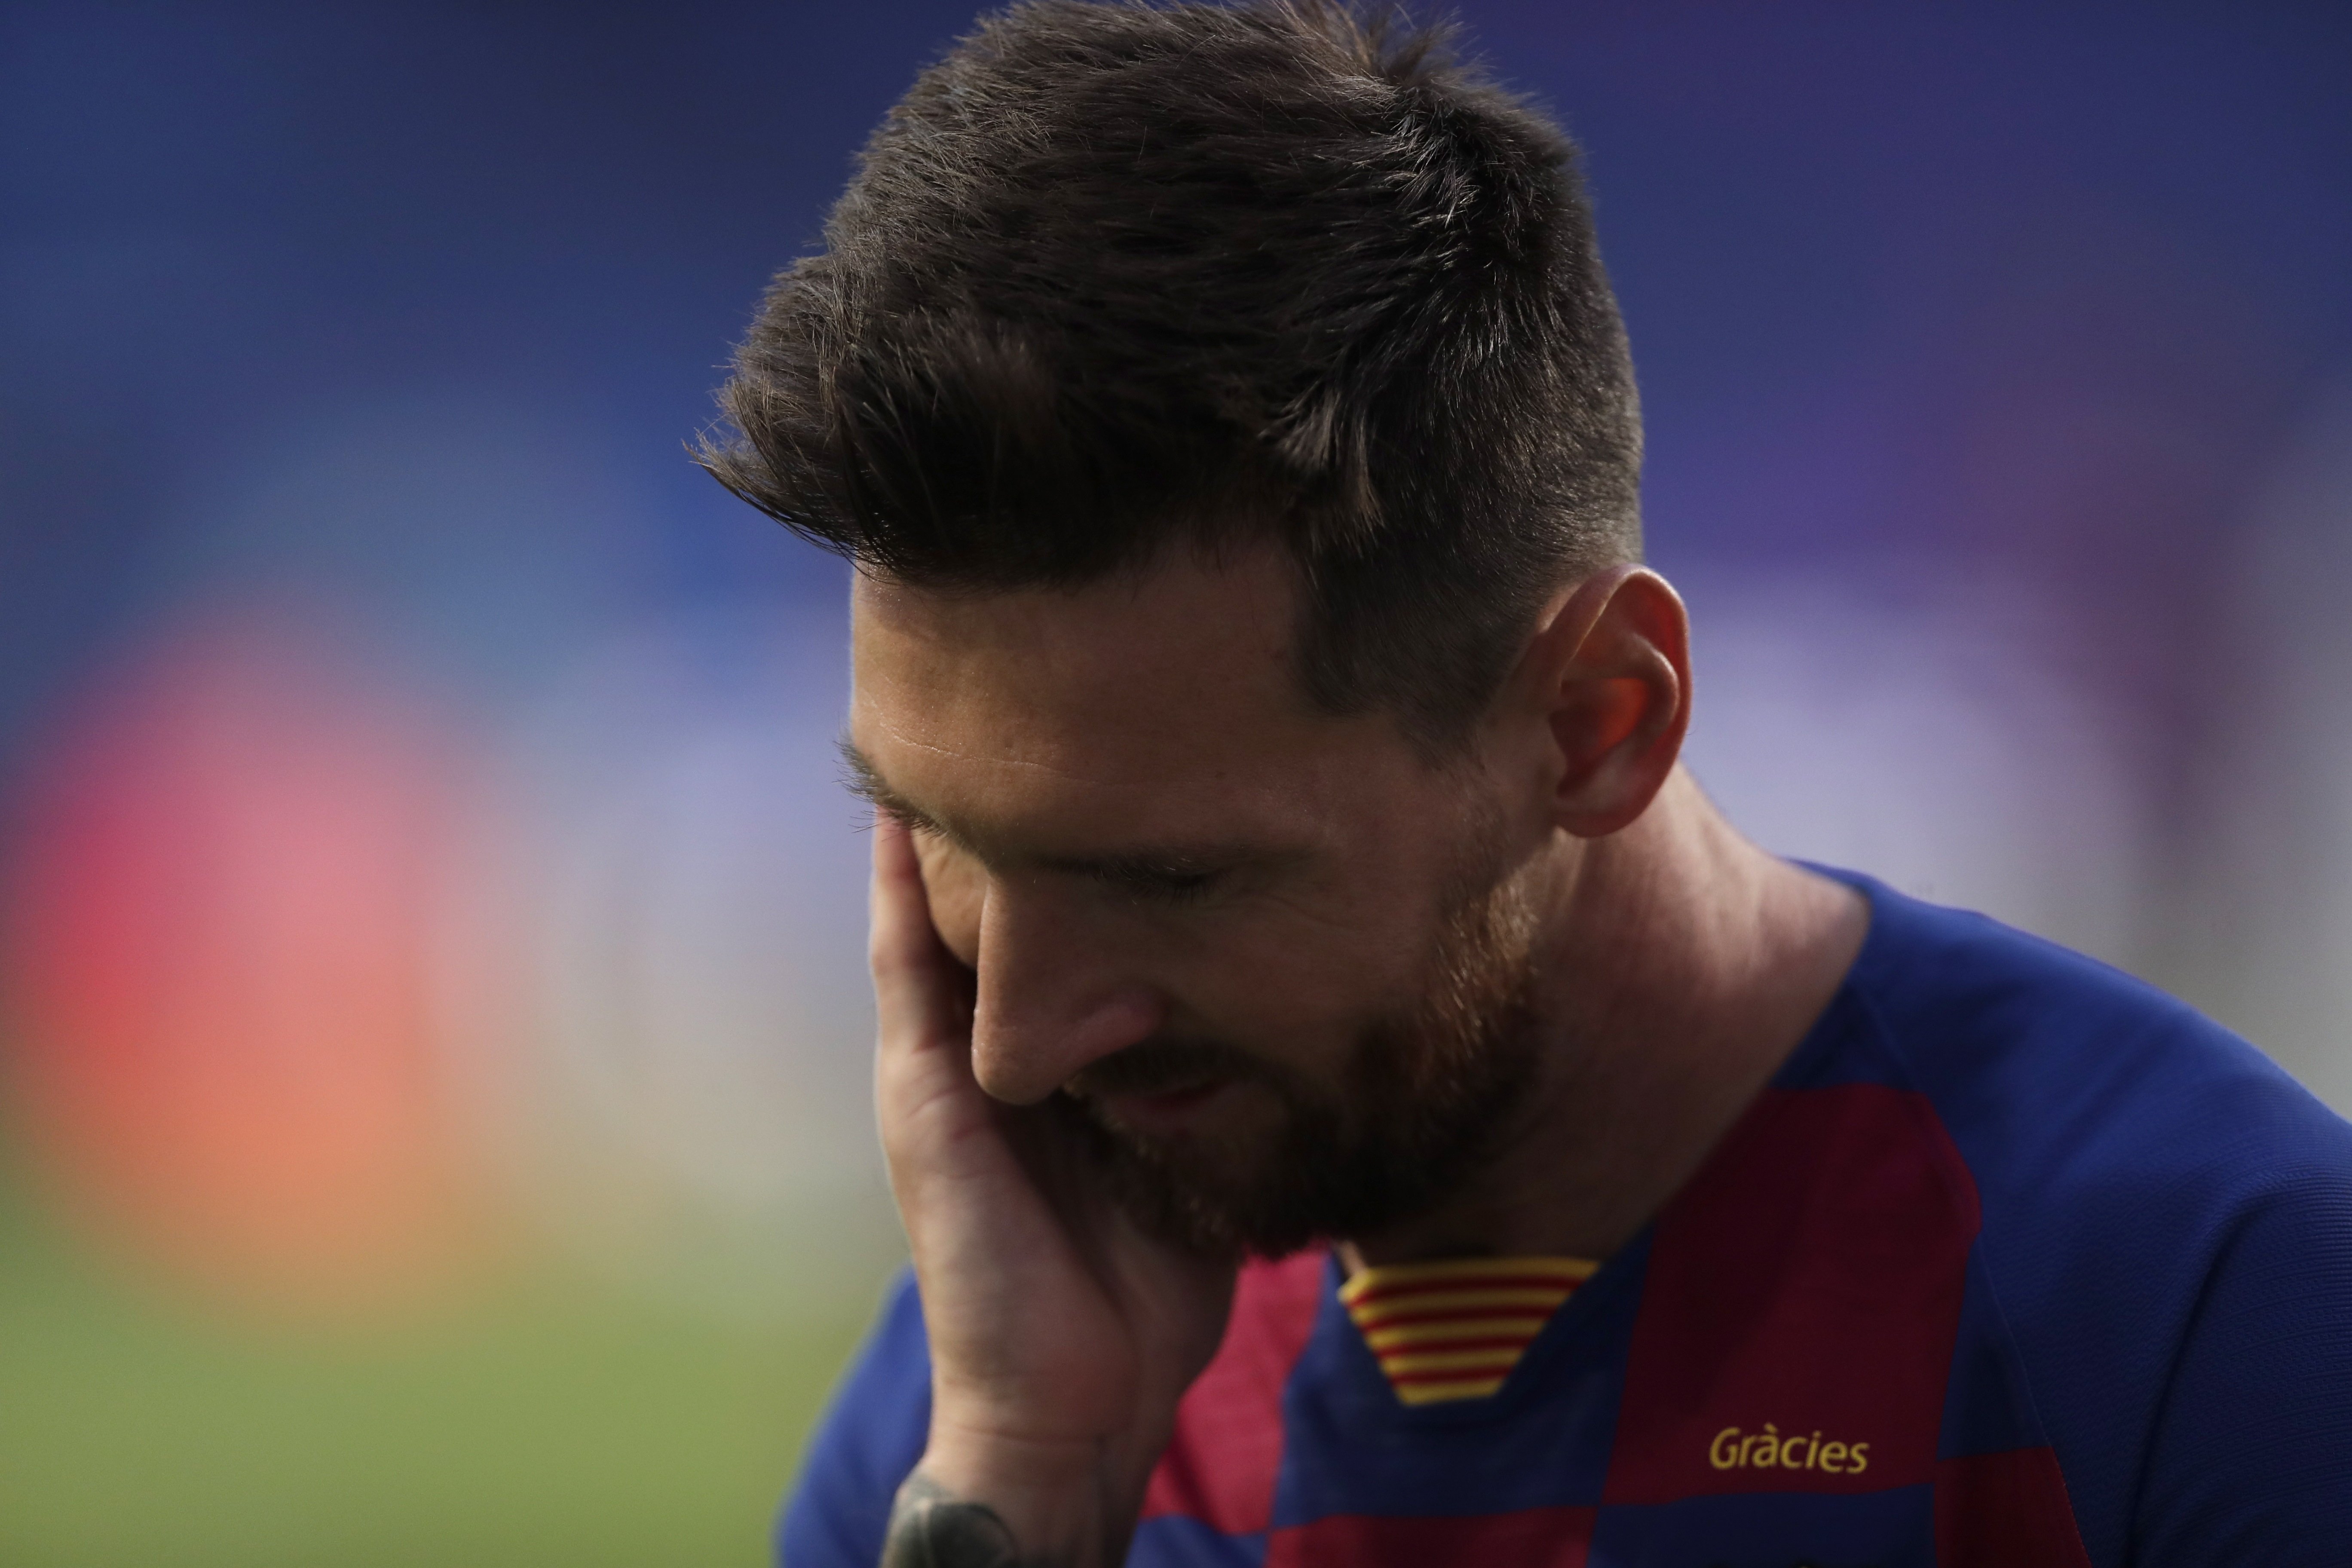 ¿Crees que Messi abandonará el Barça?